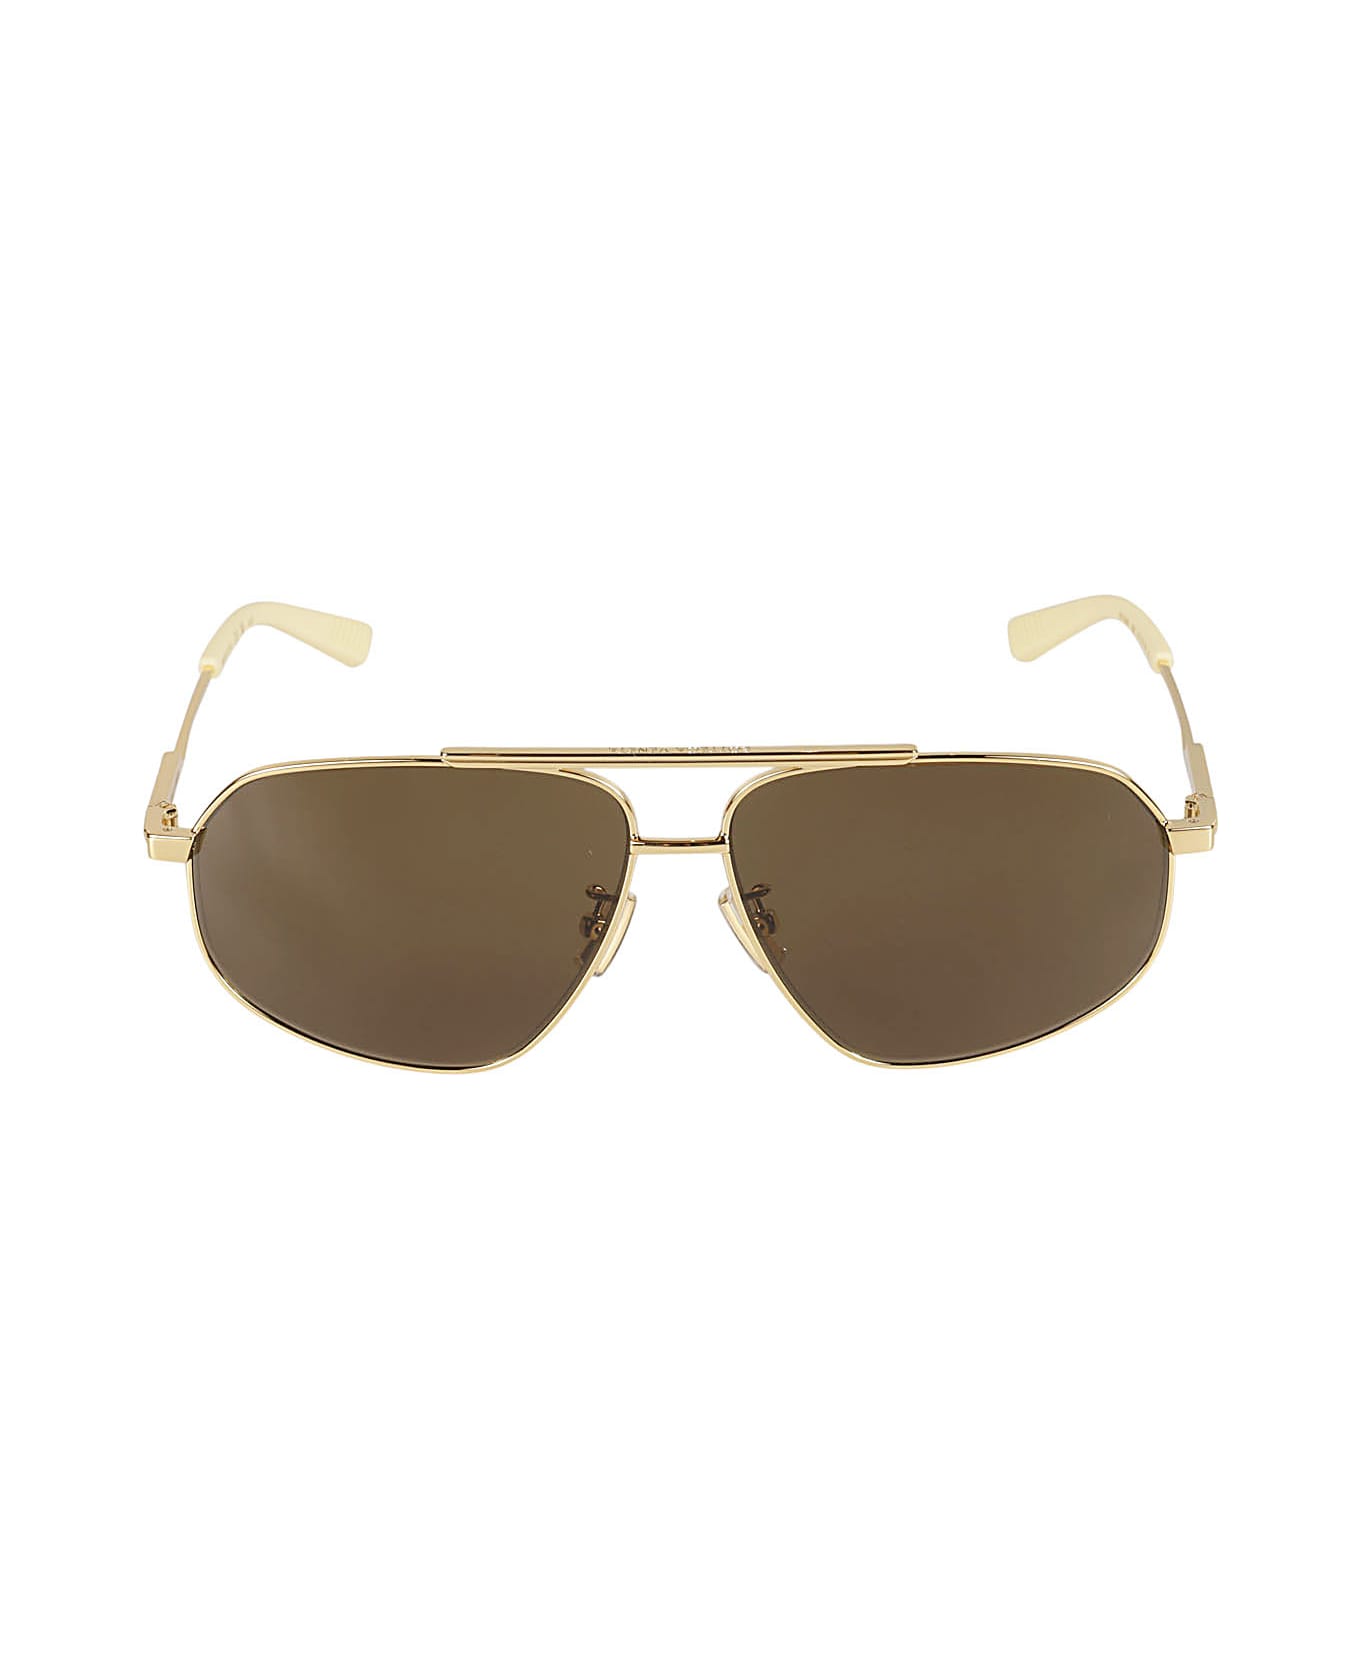 Bottega Veneta Eyewear Gold-tone Aviatore Style Sunglasses - Gold/Brown